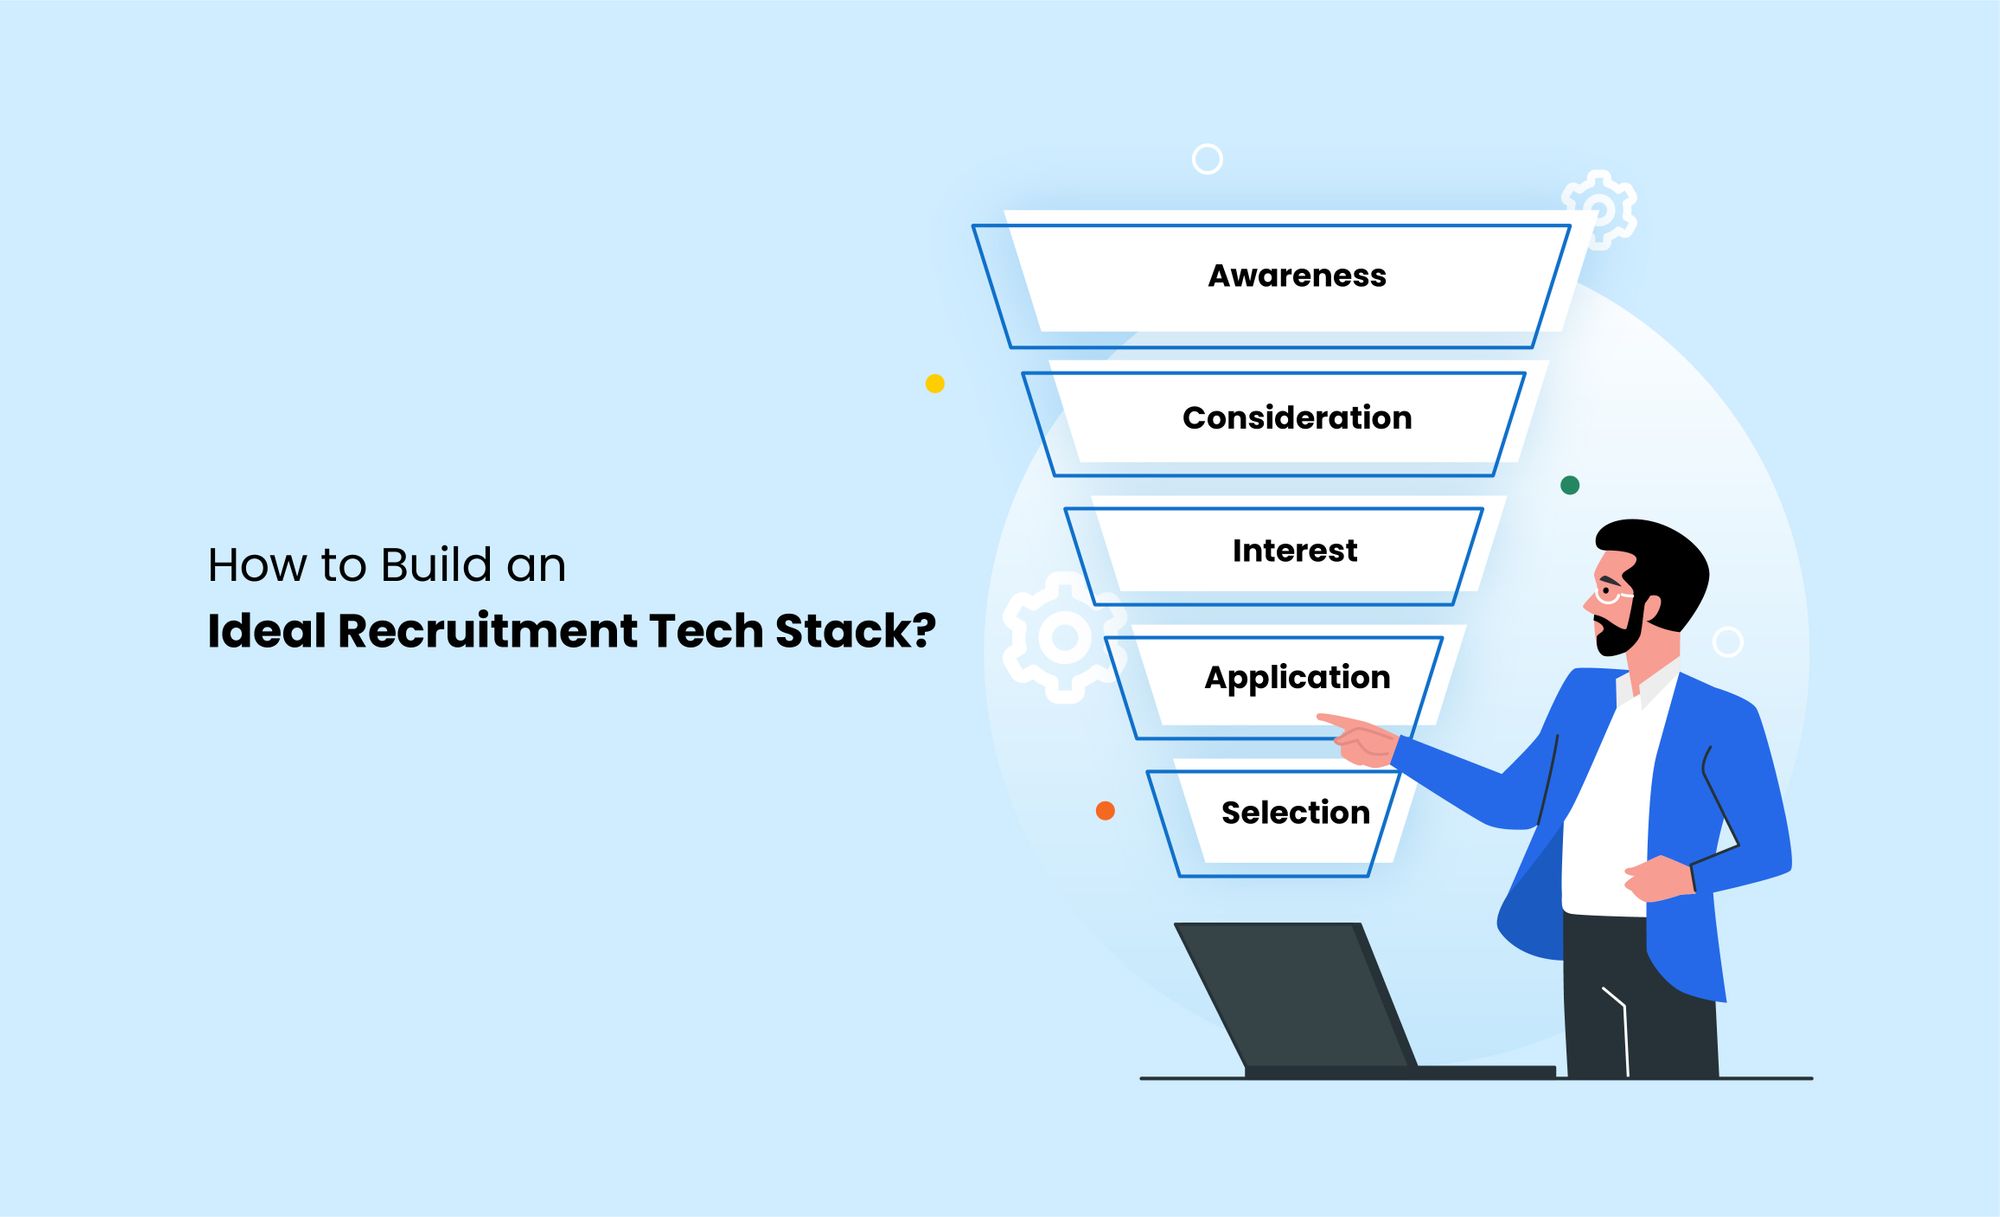 recruitment tech stack